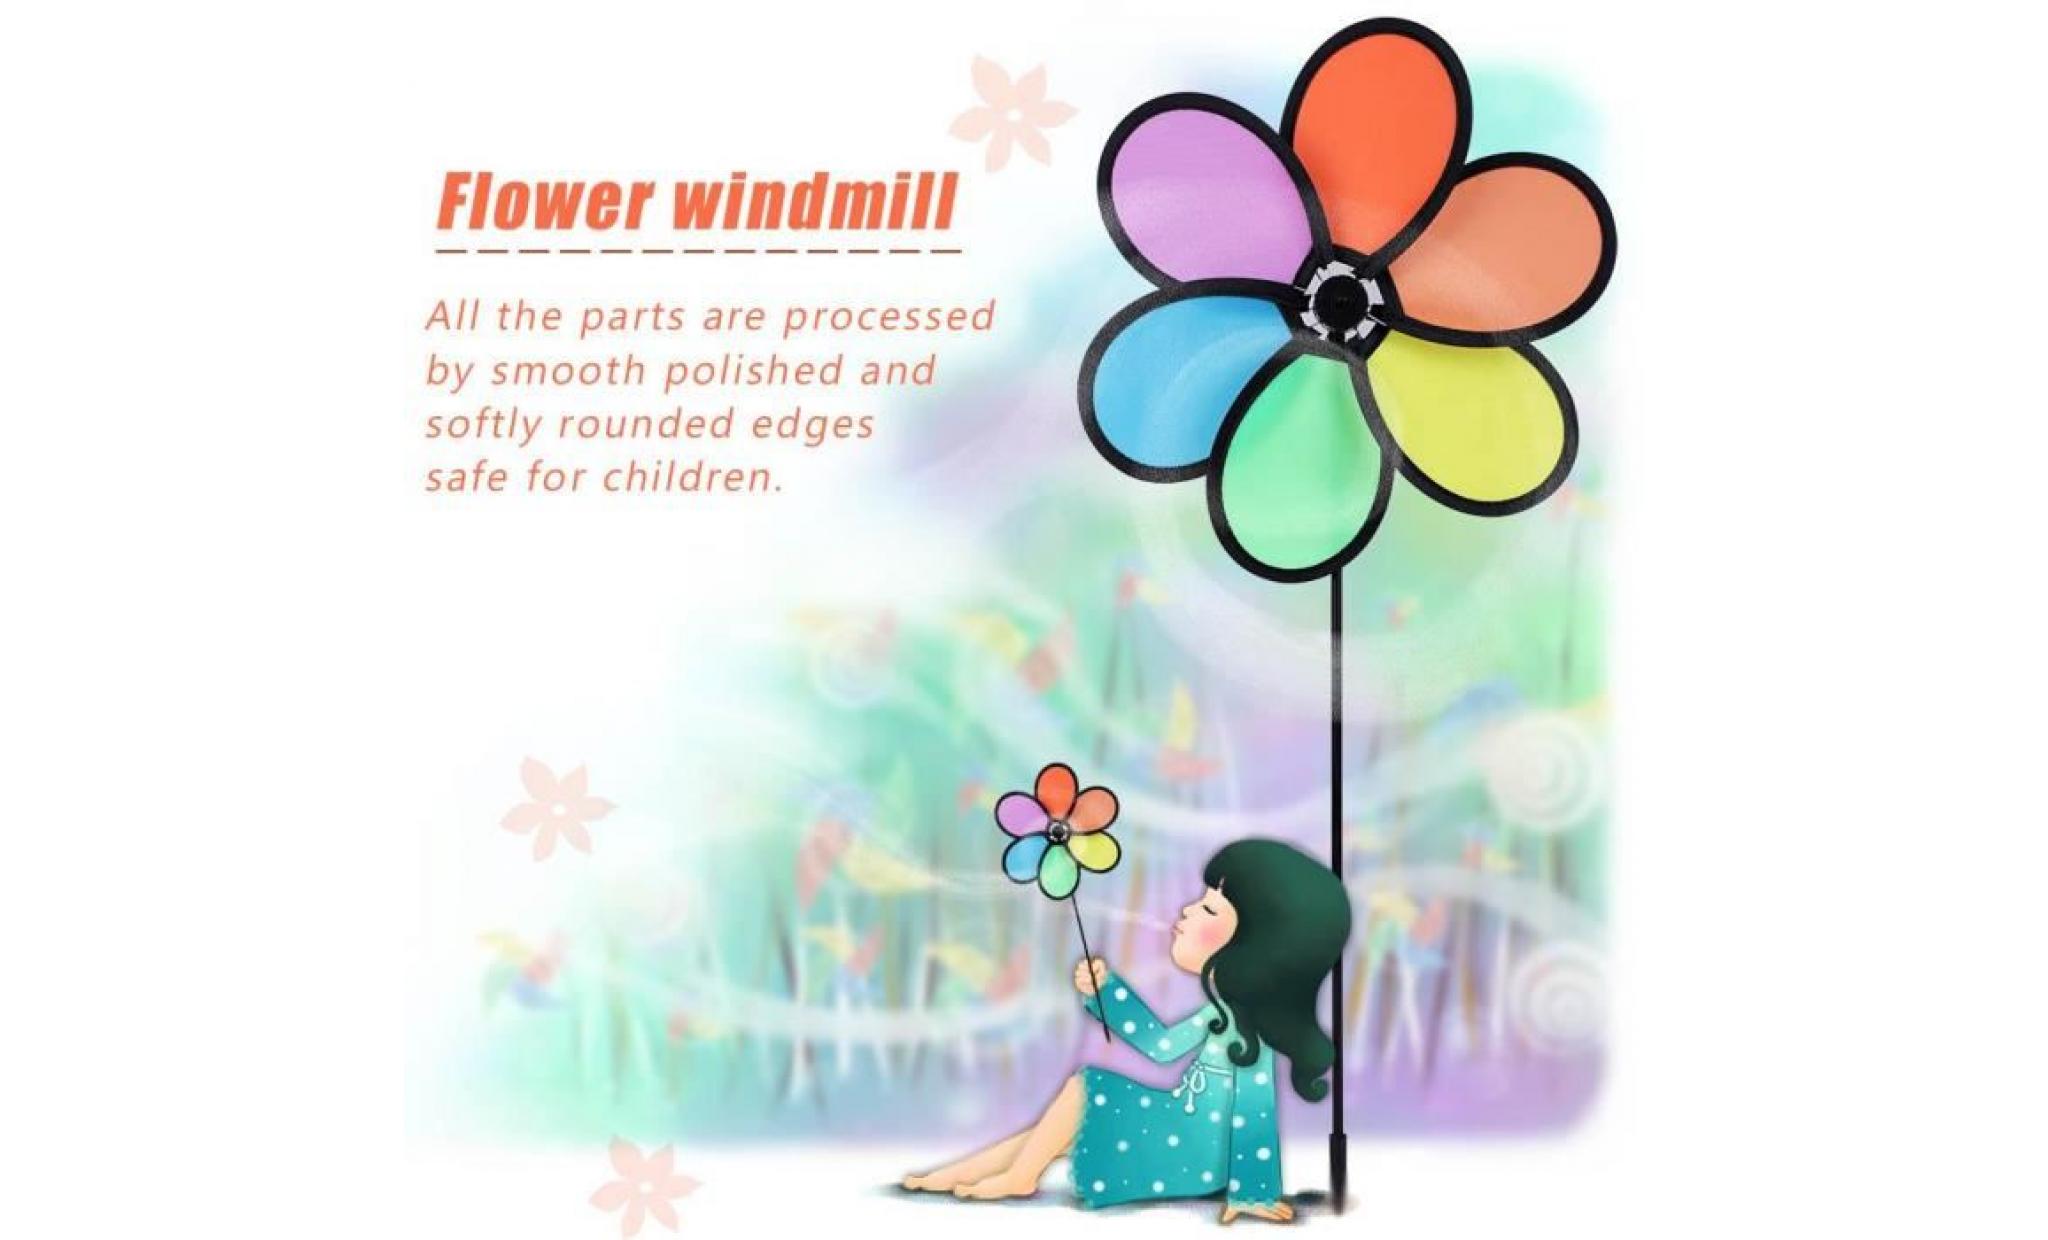 bricolage multicolor fleur moulin moulinet toupie jardin moulin à vent de jouet en plastique classique enfants cy